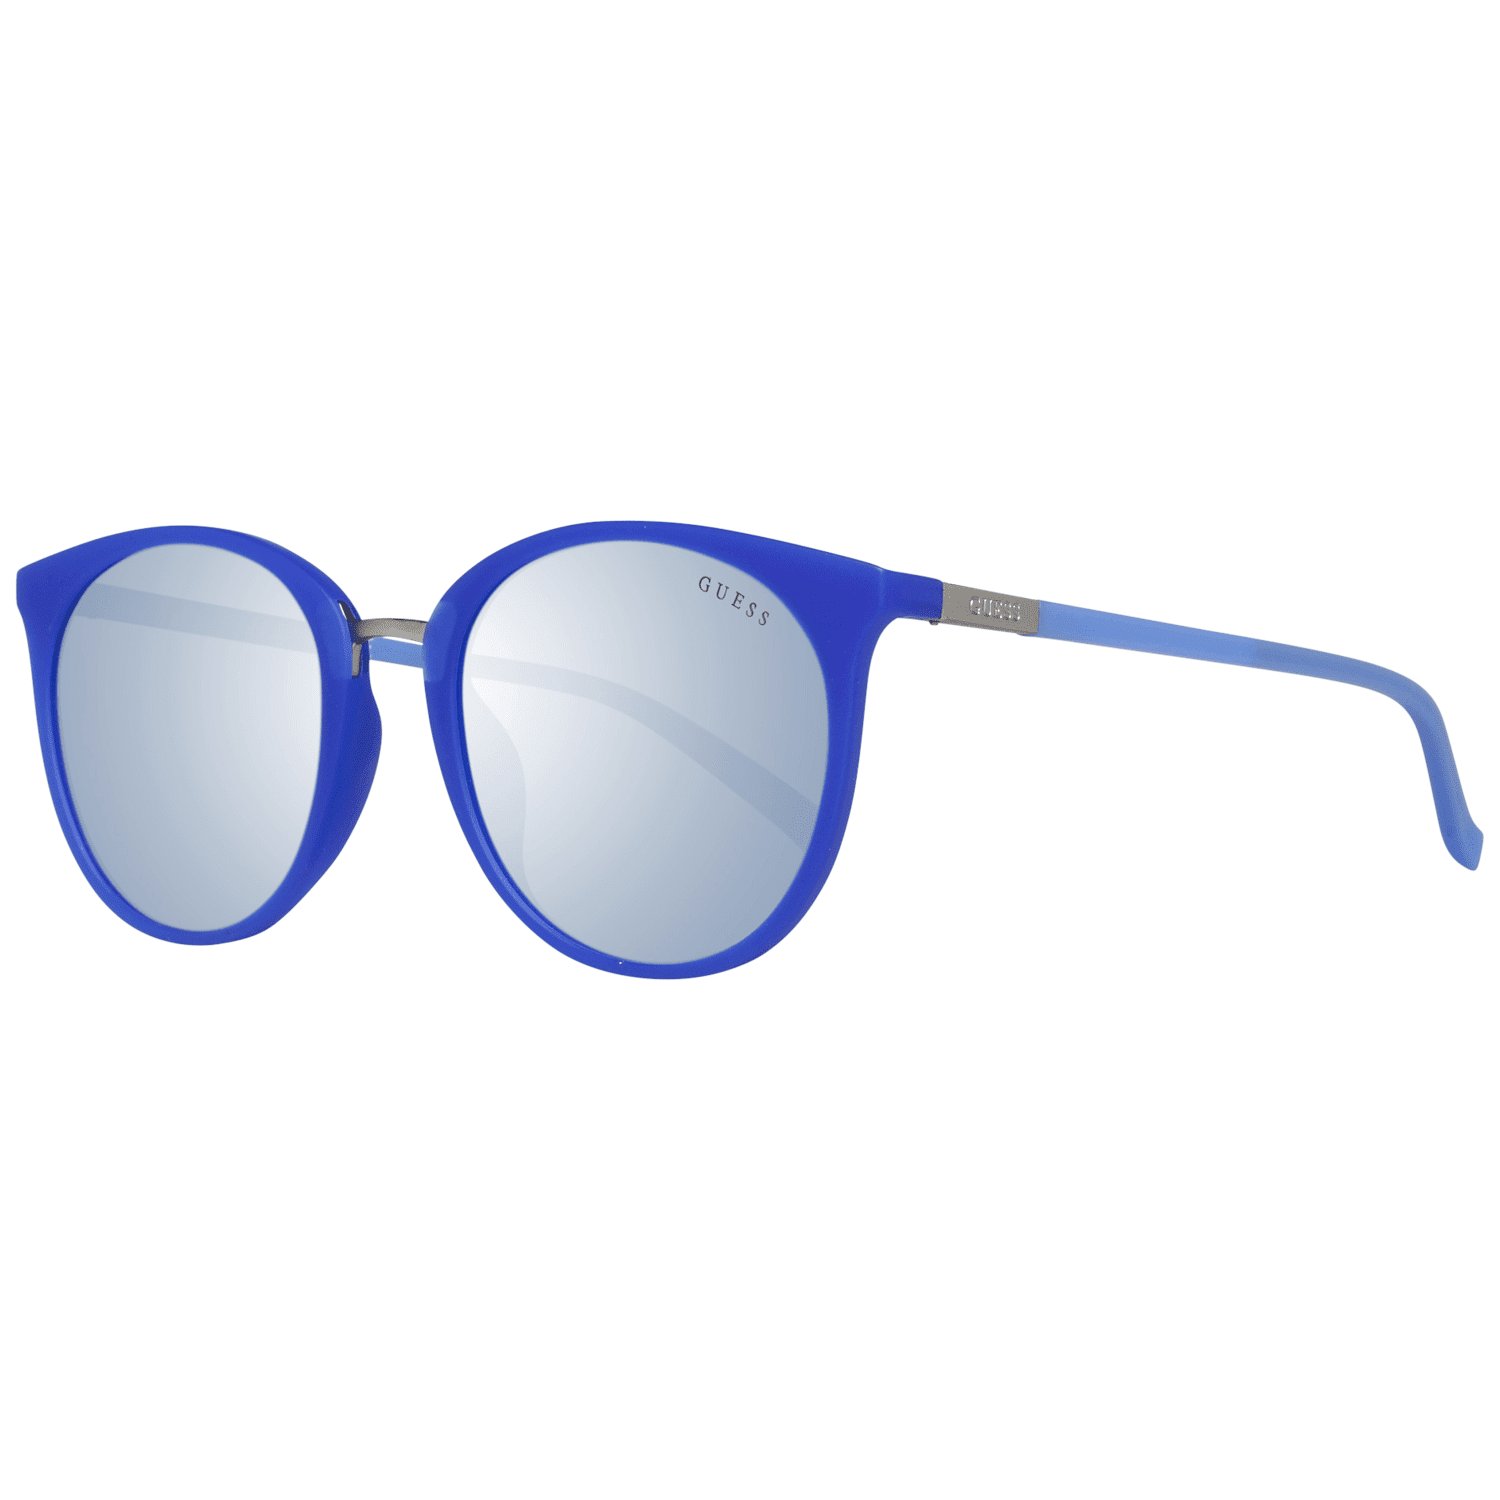 Sunglasses Guess GU 3022 91X Matte Blue / Blu Mirror - Walmart.com